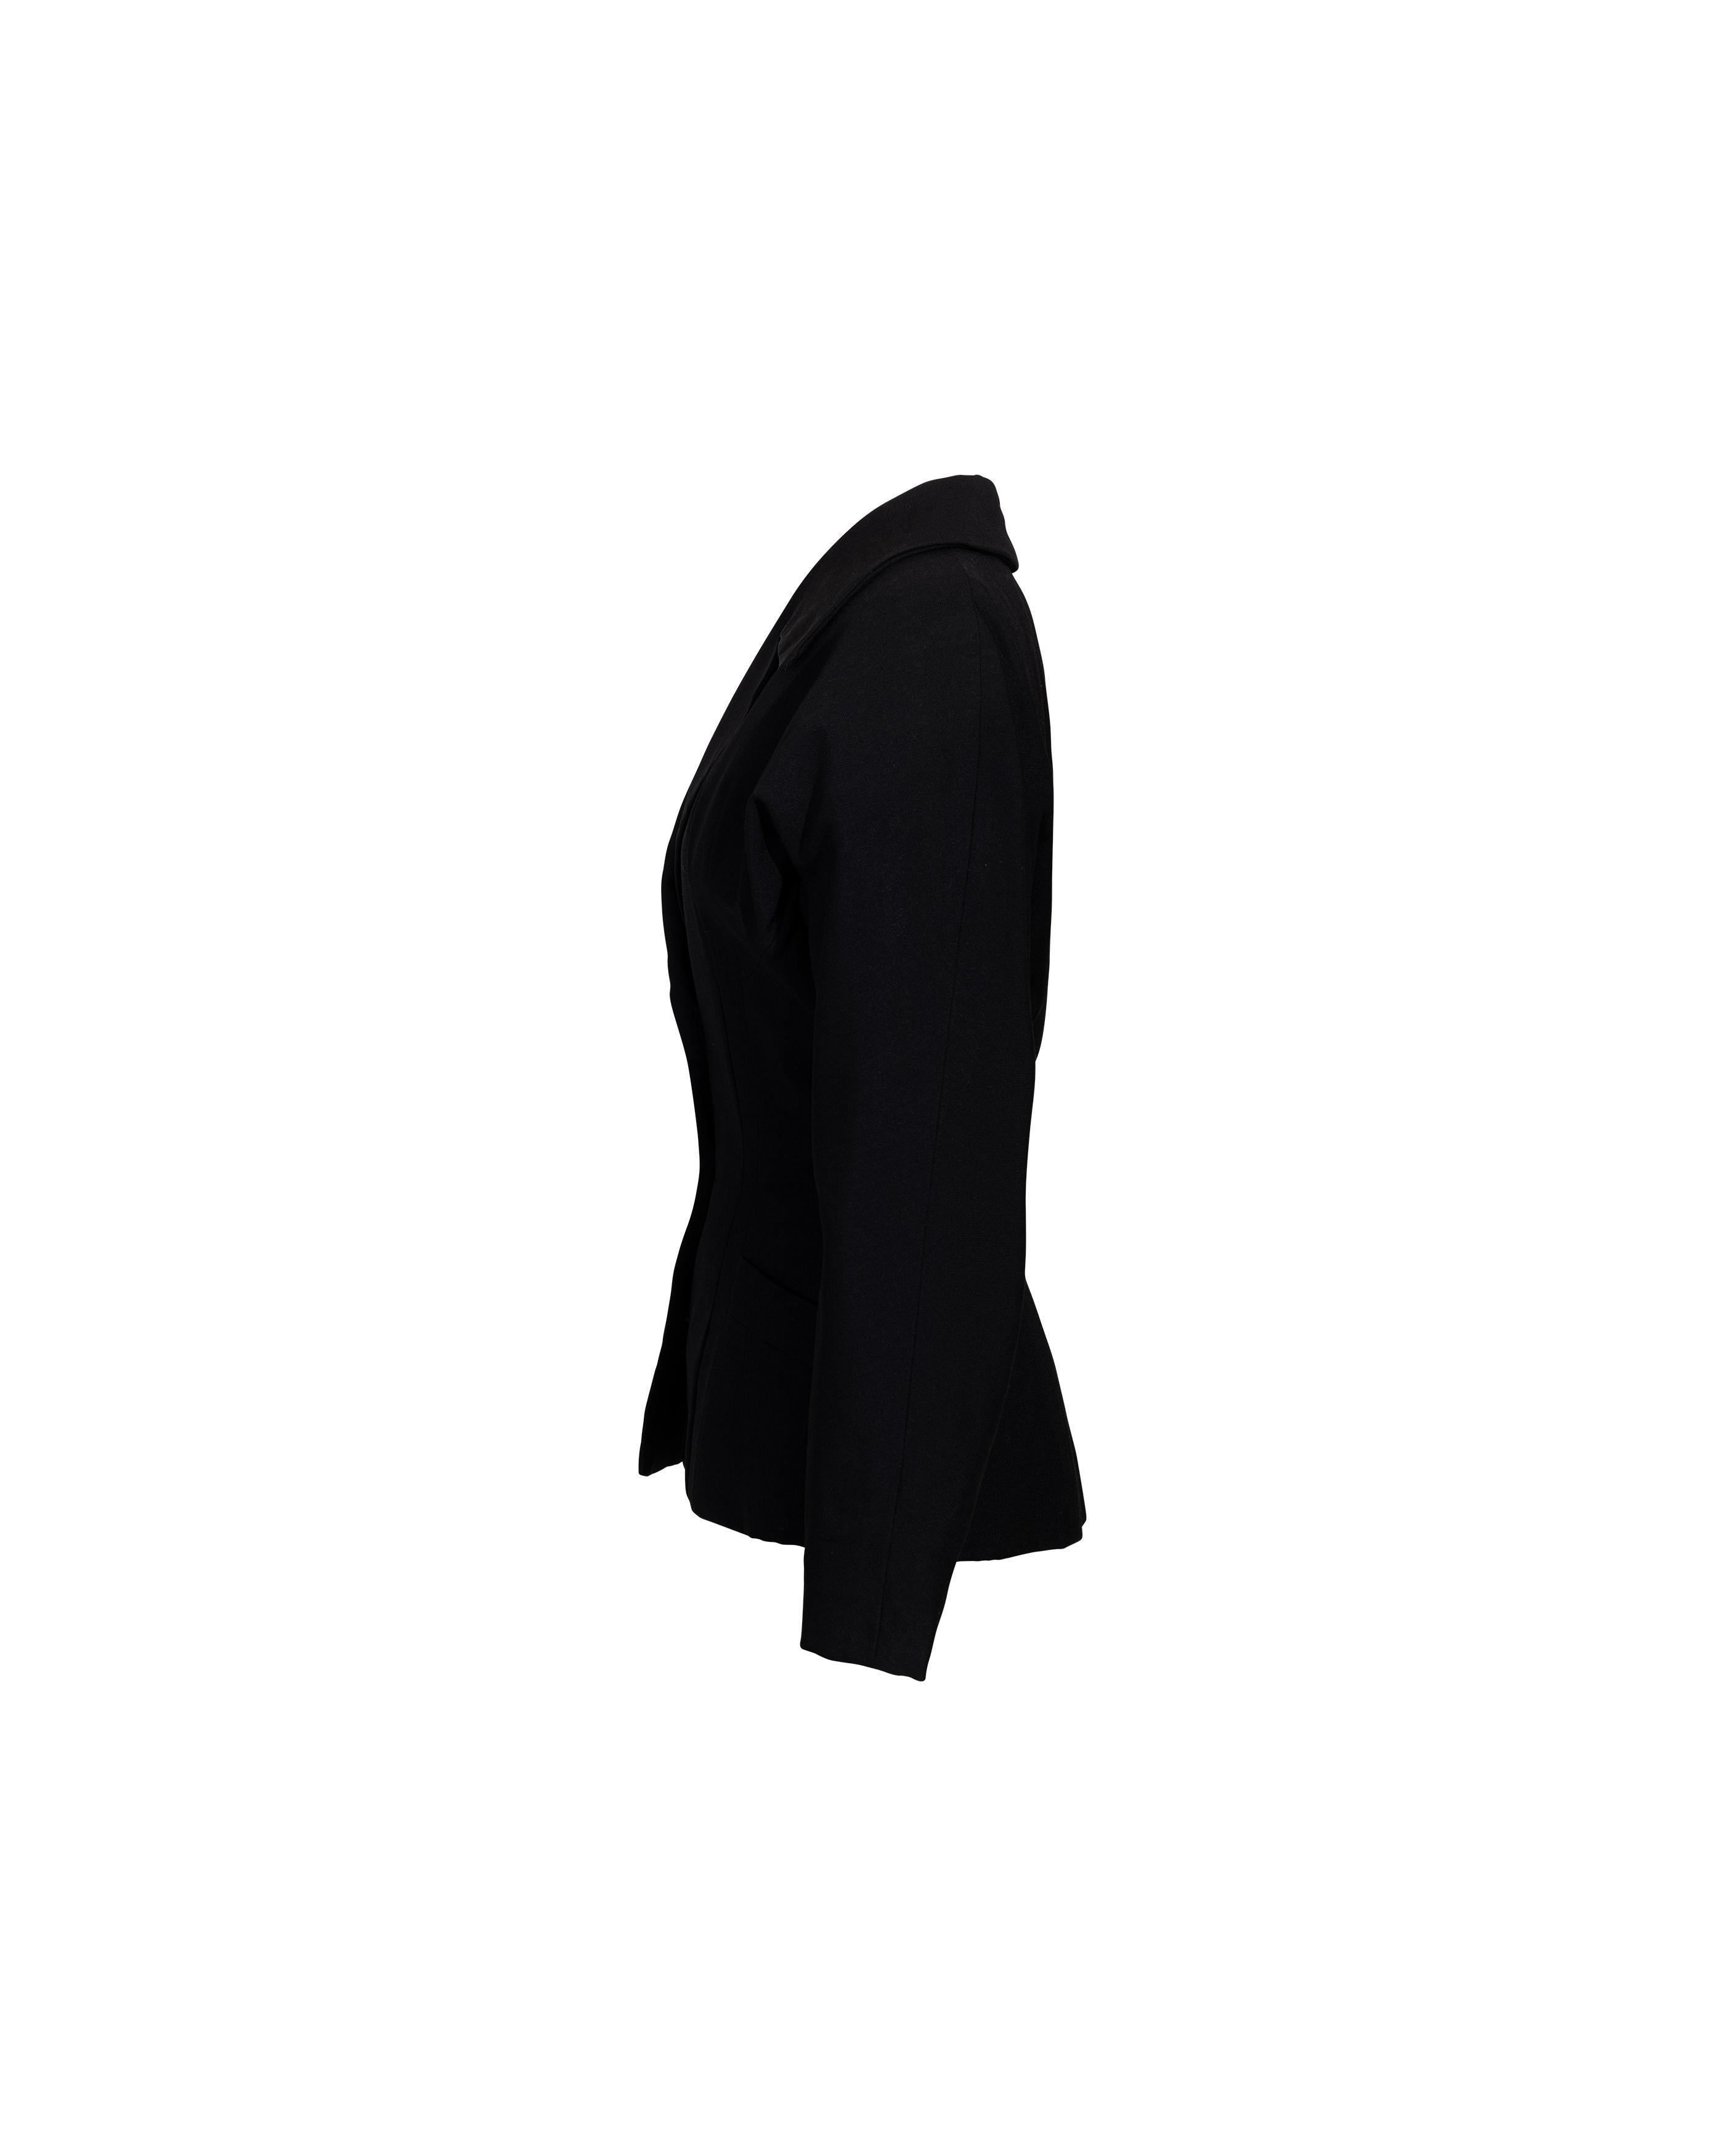 c. 1950 Christian Dior Couture 'New Look' veste en laine noire. Blazer à manches longues avec revers crantés et taille ajustée, créant la silhouette Dior 